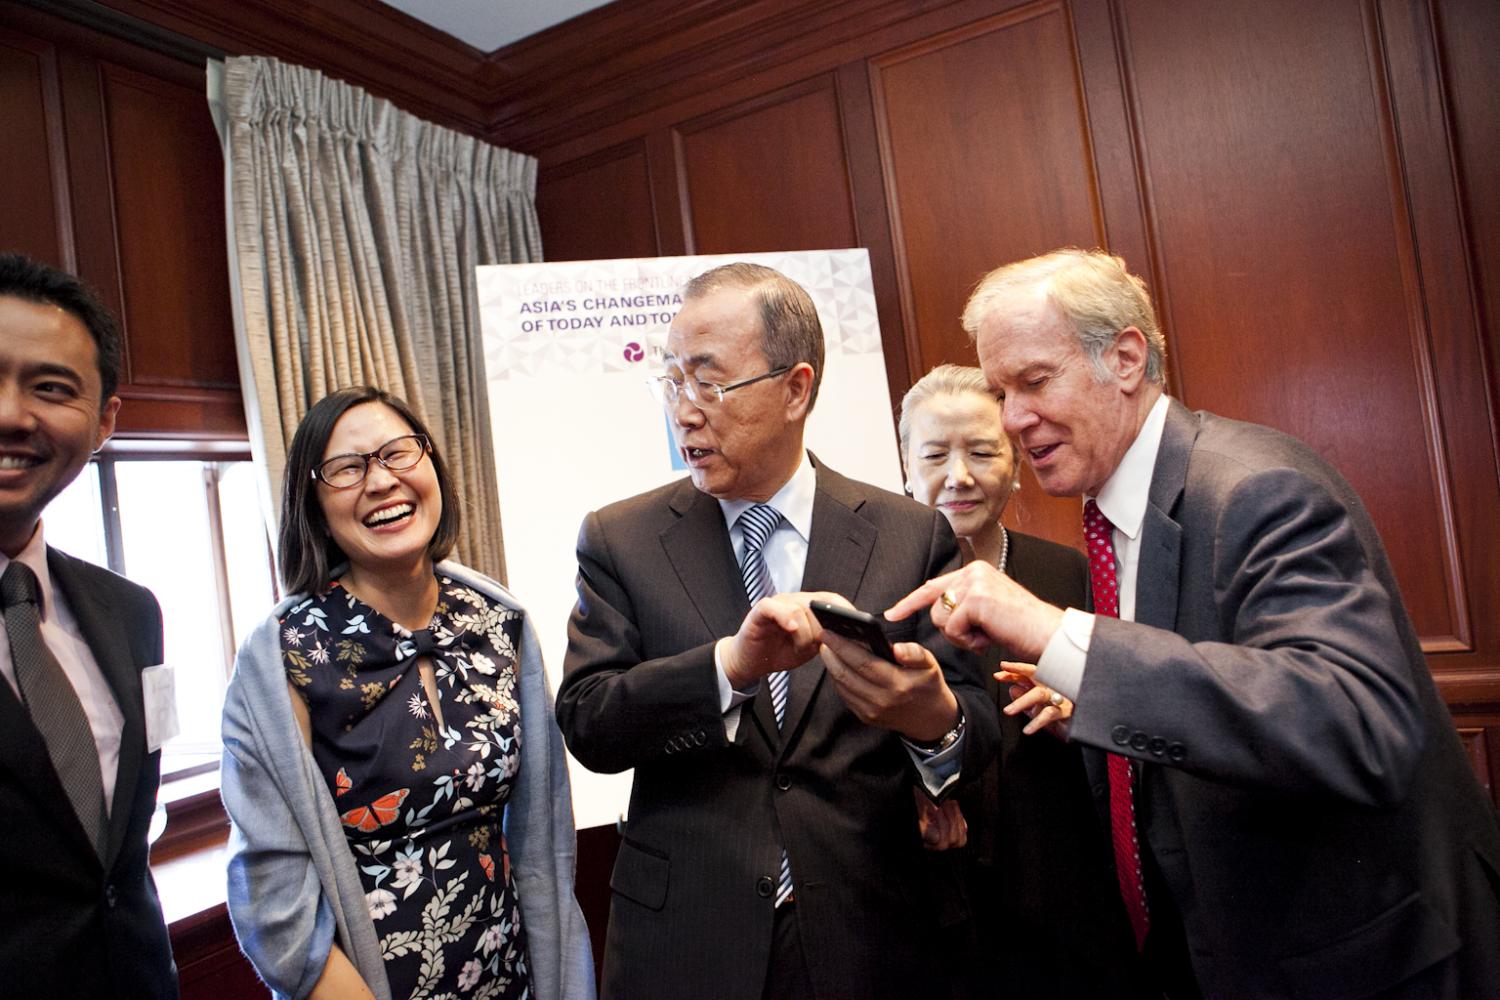 Ban Ki-moon with guests